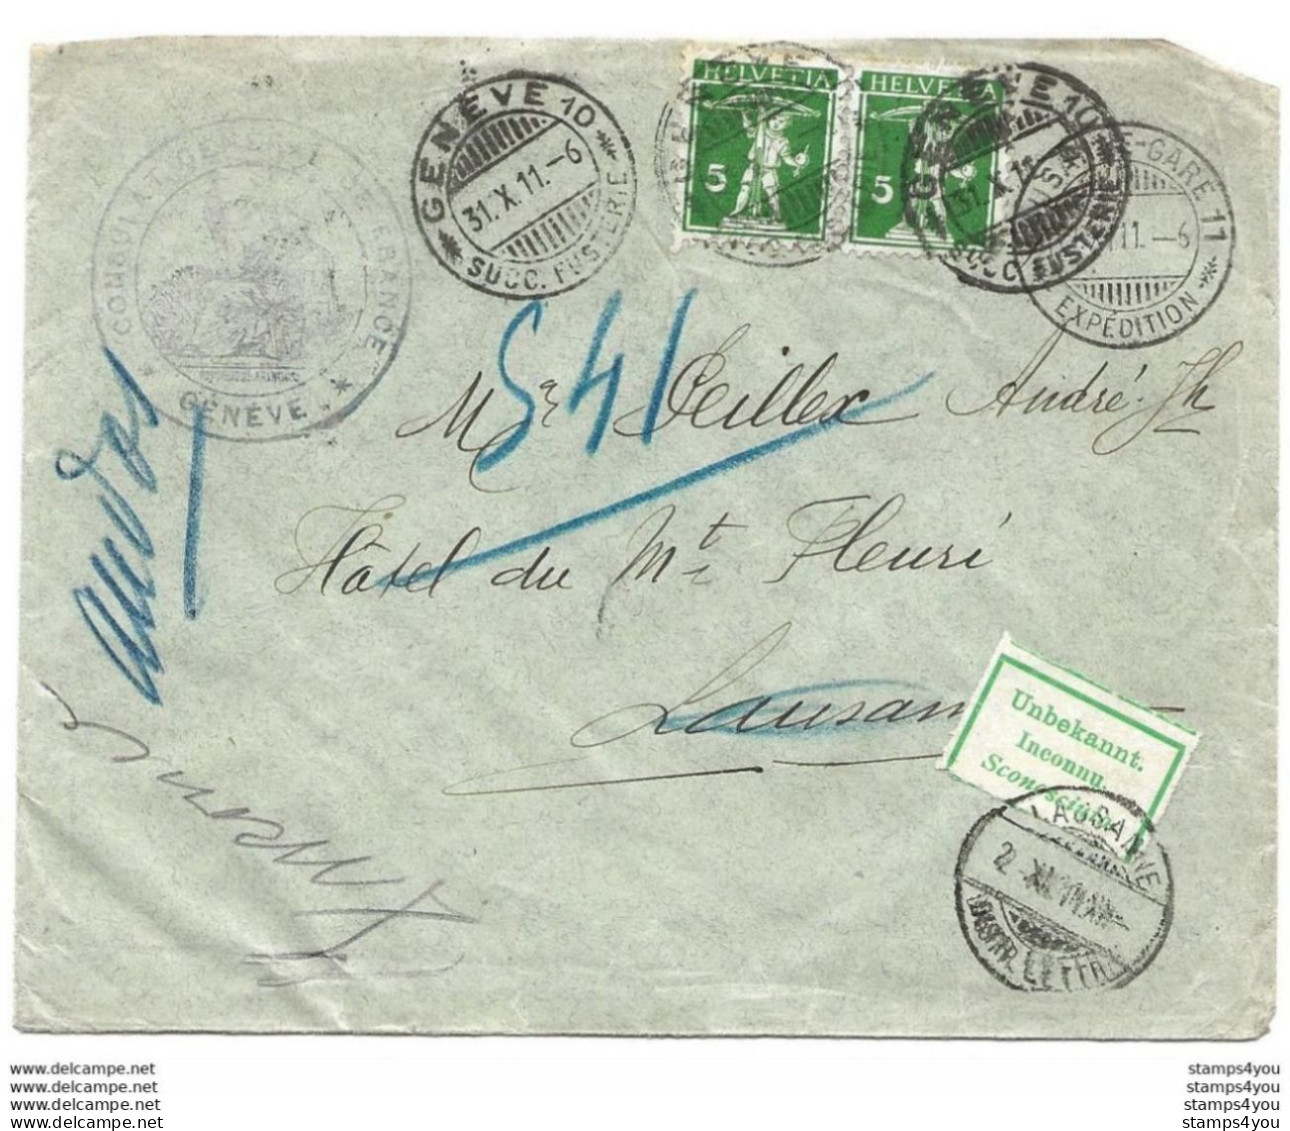 278 - 74 - Enveloppe Envoyée De Genève à Lausanne 1911 - étiquette "inconnu" - Lettres & Documents